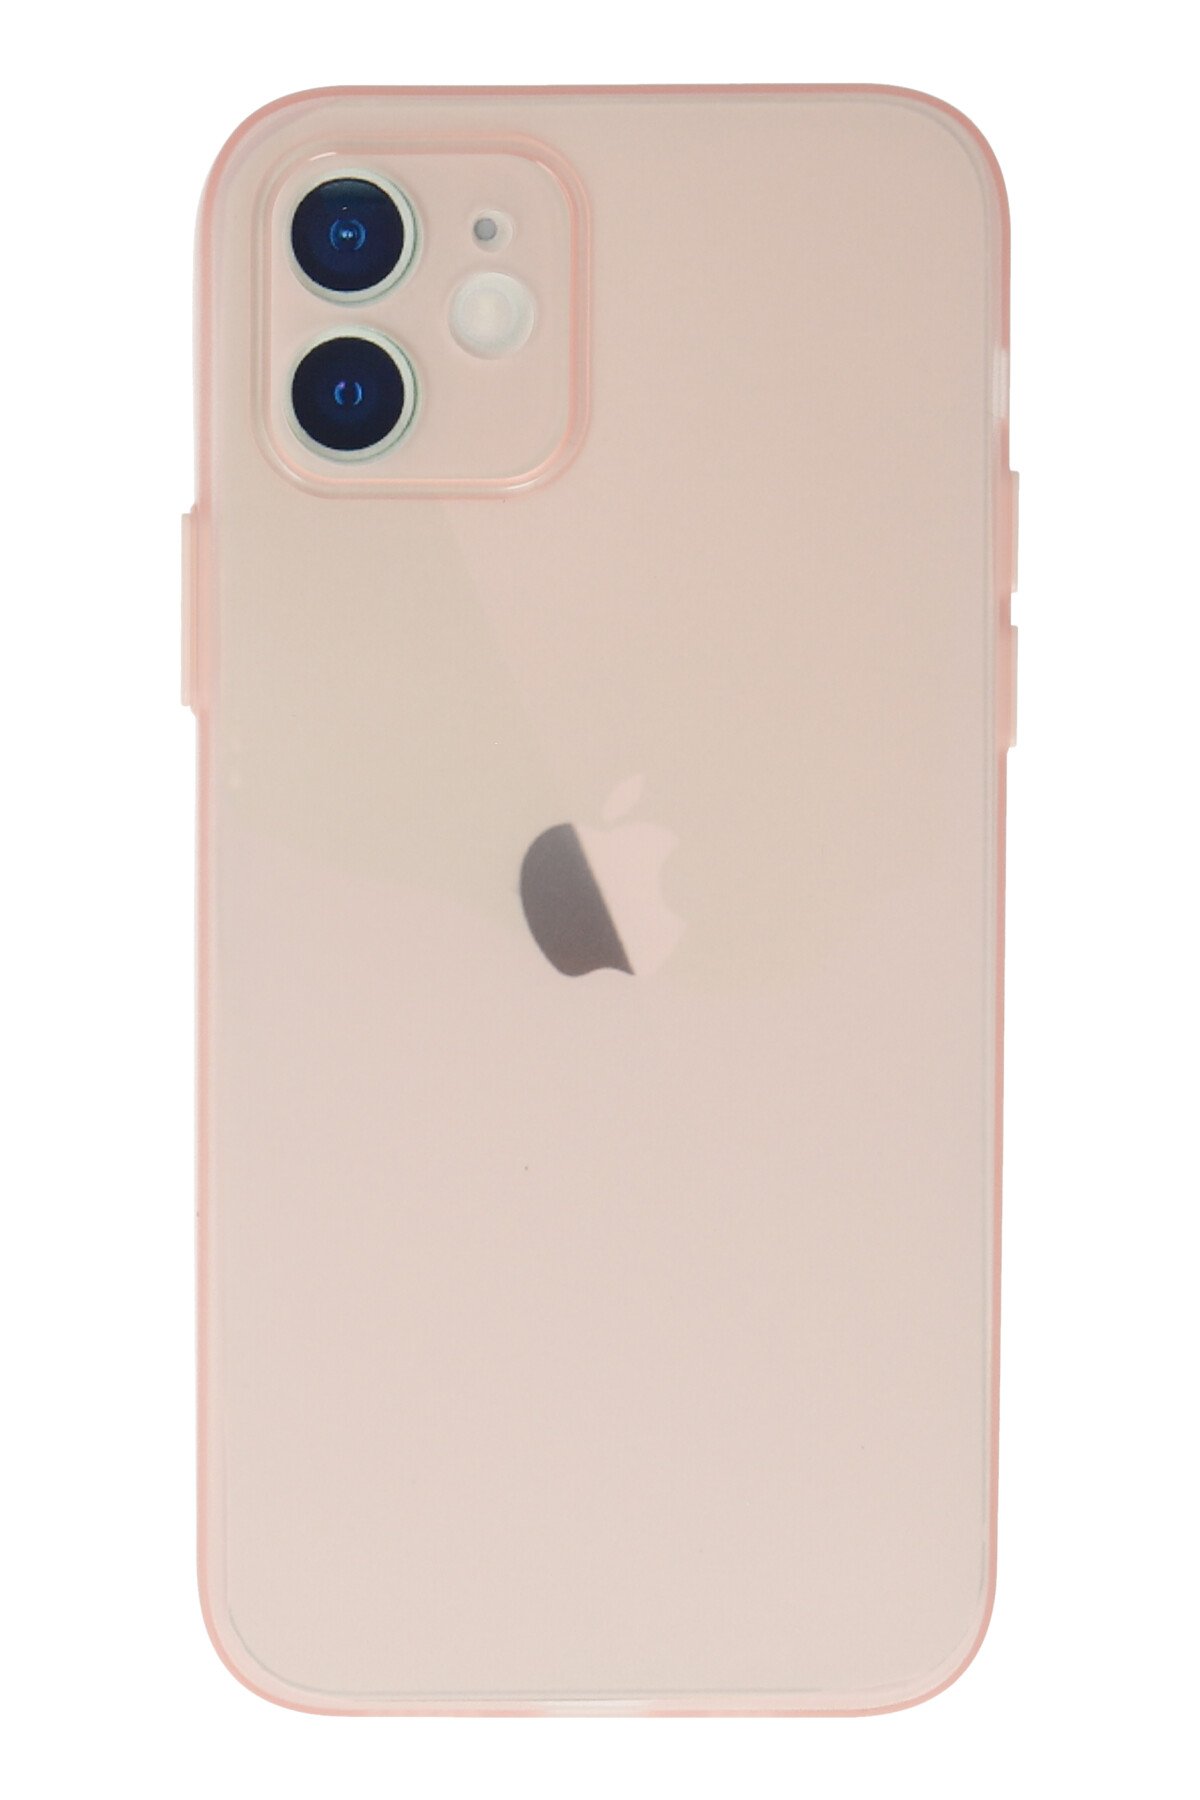 Newface iPhone 12 Kılıf Magneticsafe Lansman Silikon Kapak - Yeşil